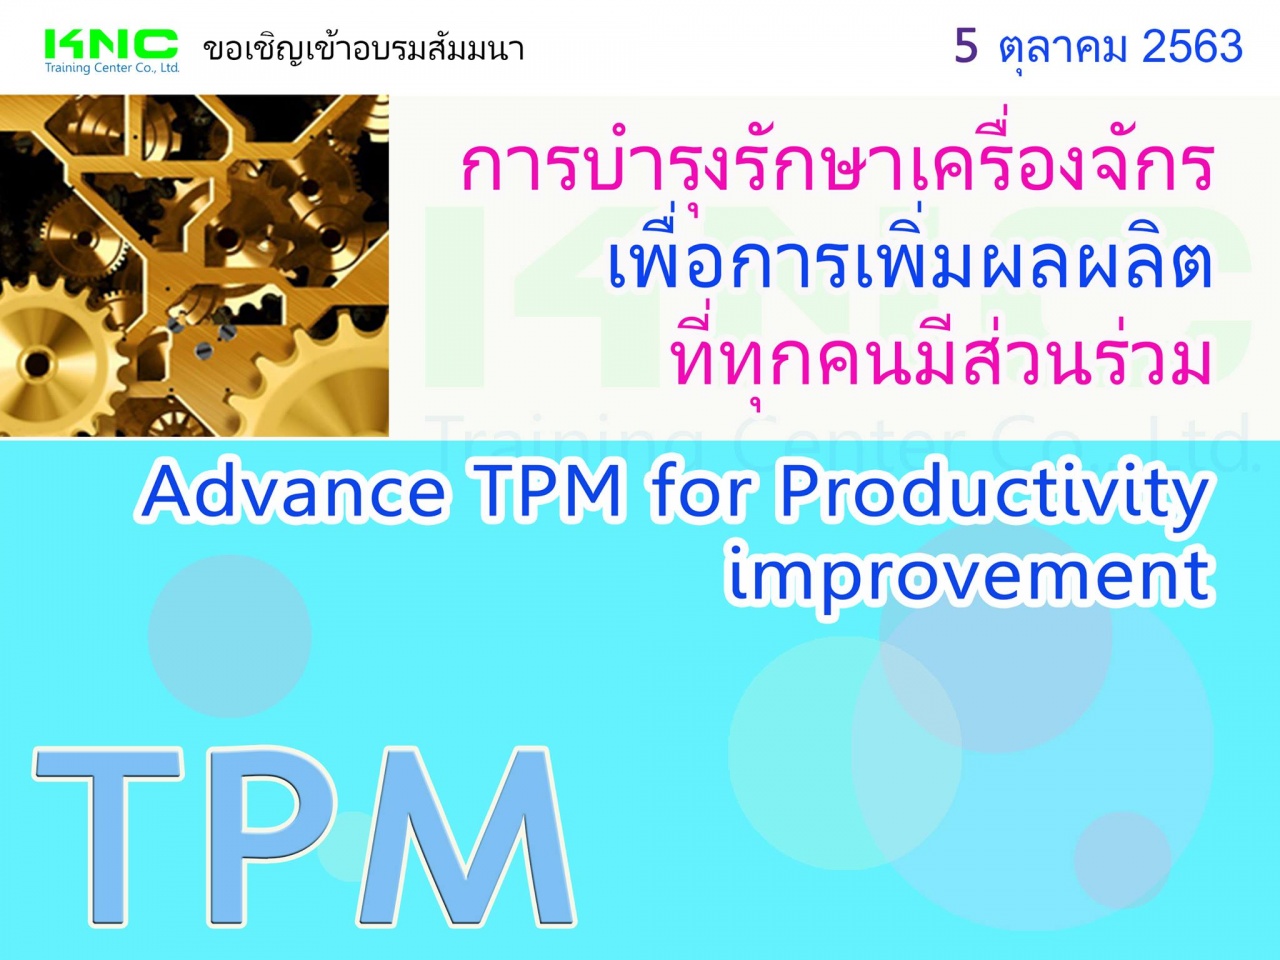 TPM การบำรุงรักษาเครื่องจักรเพื่อการเพิ่มผลผลิตที่ทุกคนมีส่วนร่วม